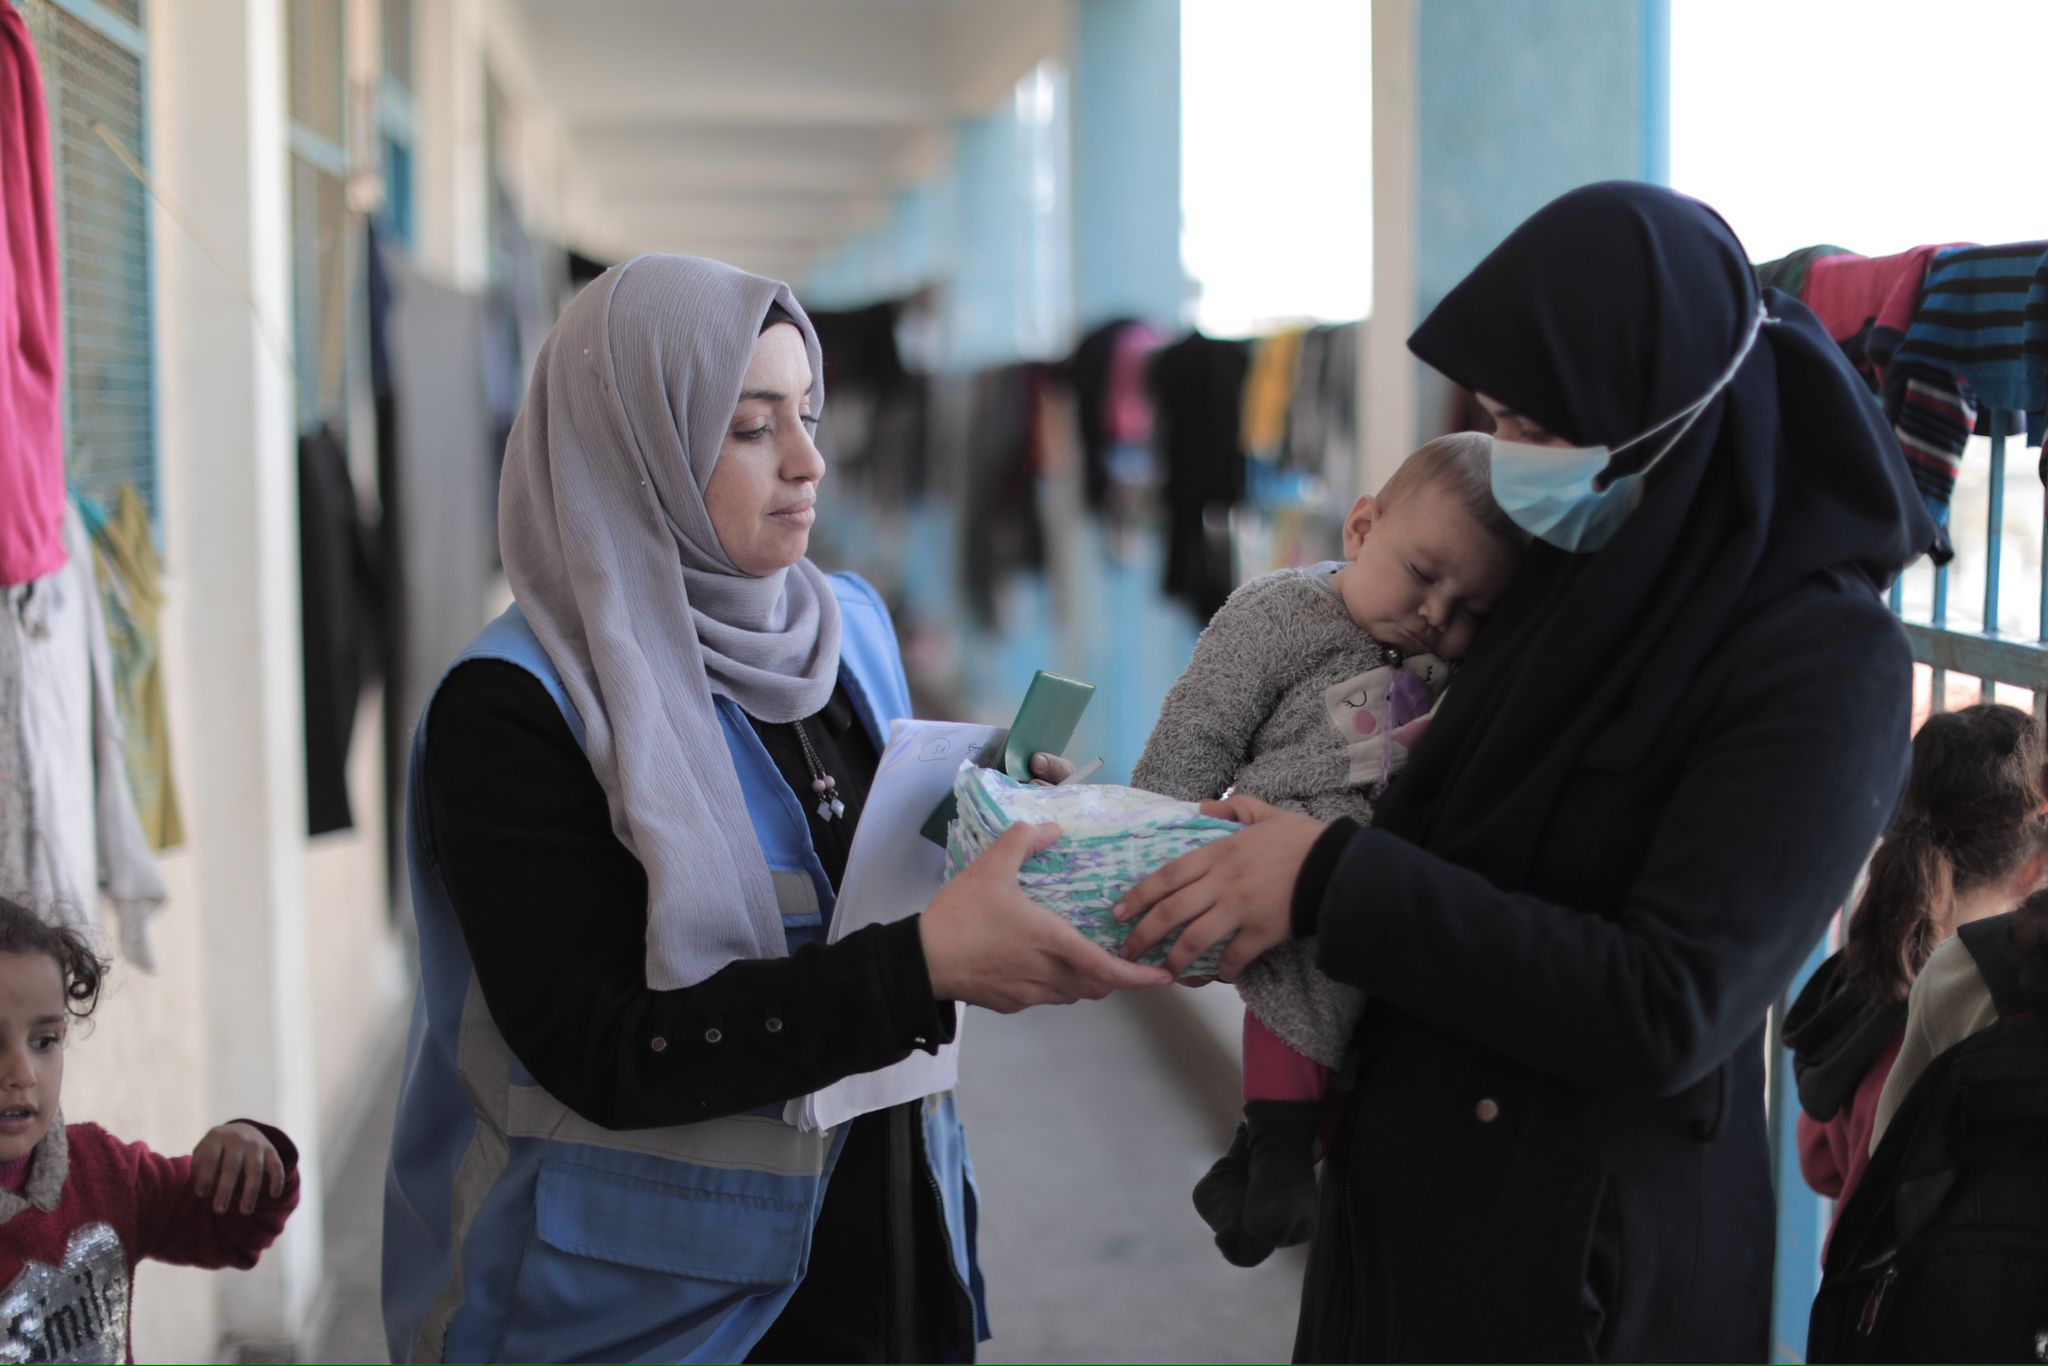 Yeni Zelanda, UNRWA’ya maddi desteği kesmeyecek